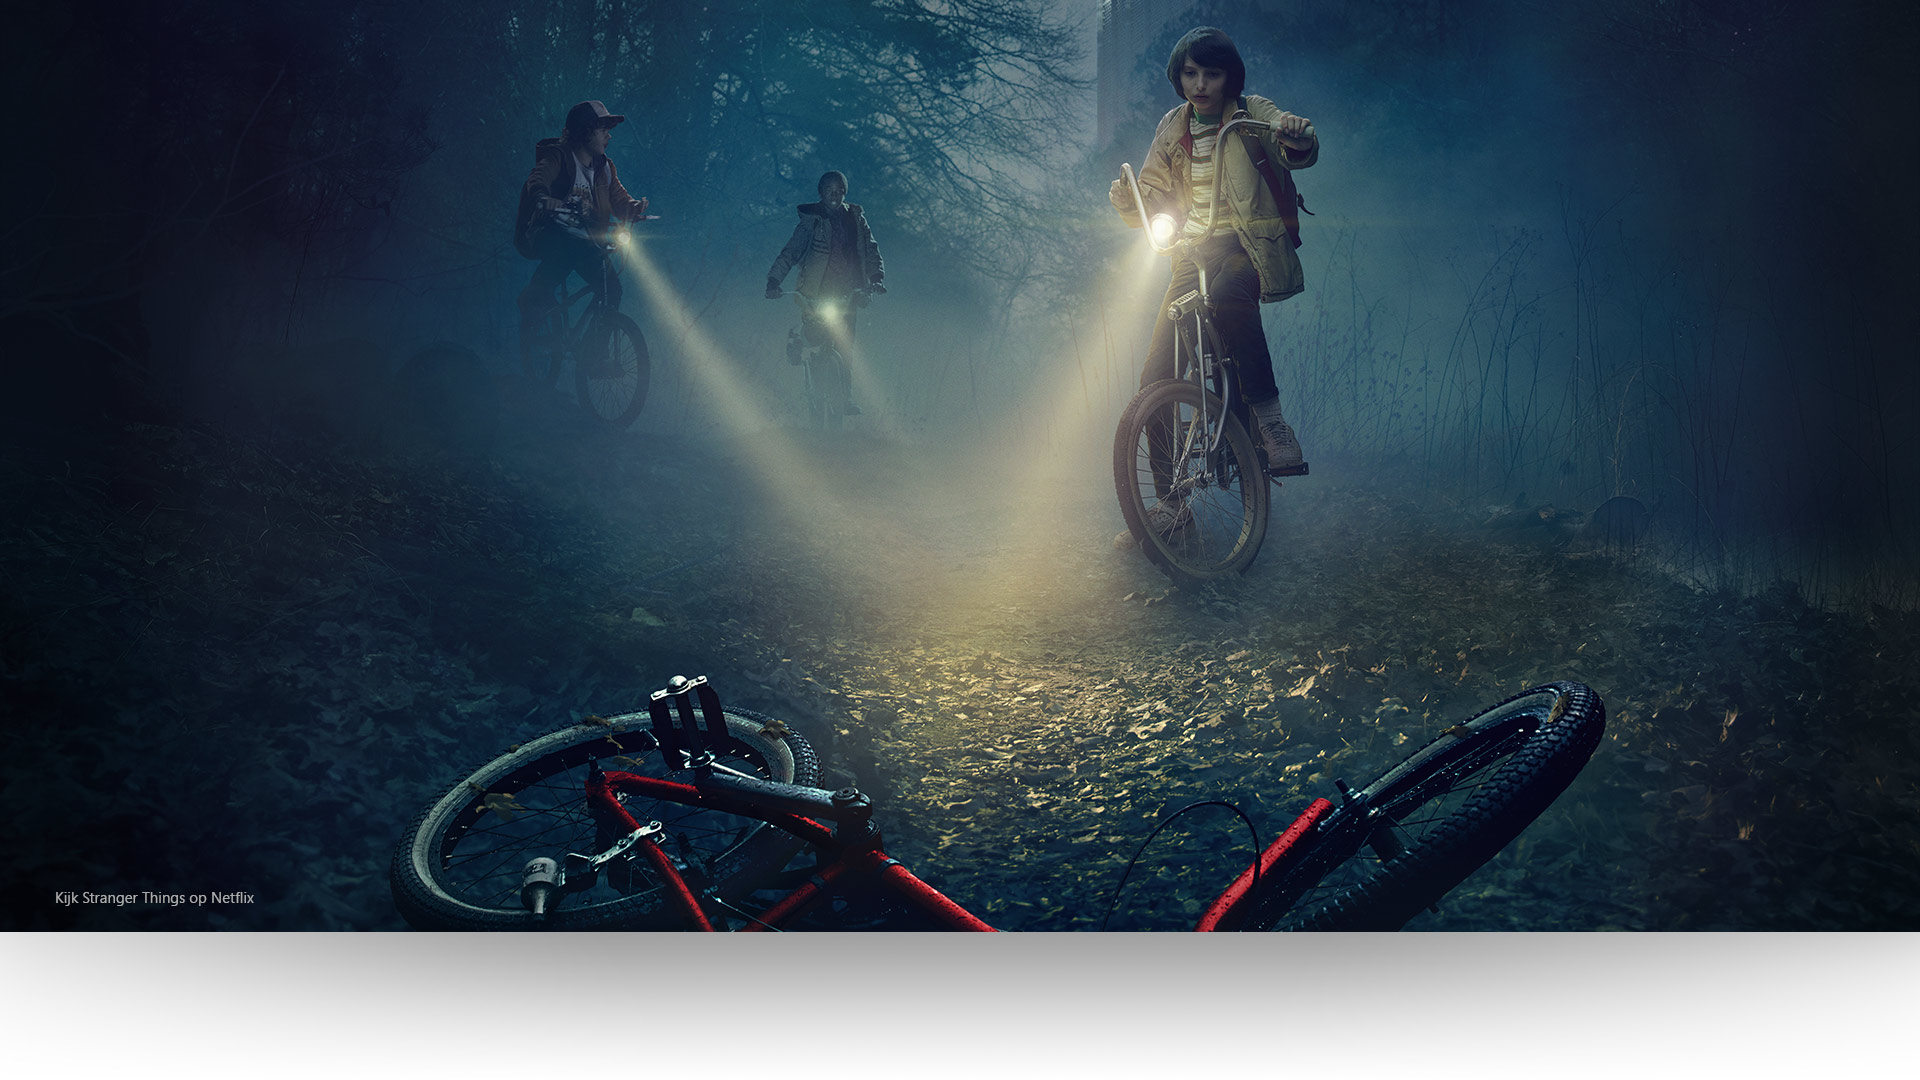 Stranger Things - Dustin, Lucas en Mike laten hun lichten schijnen op een verlaten fiets op een somber bospad. Kijk Stranger Things op Netflix.